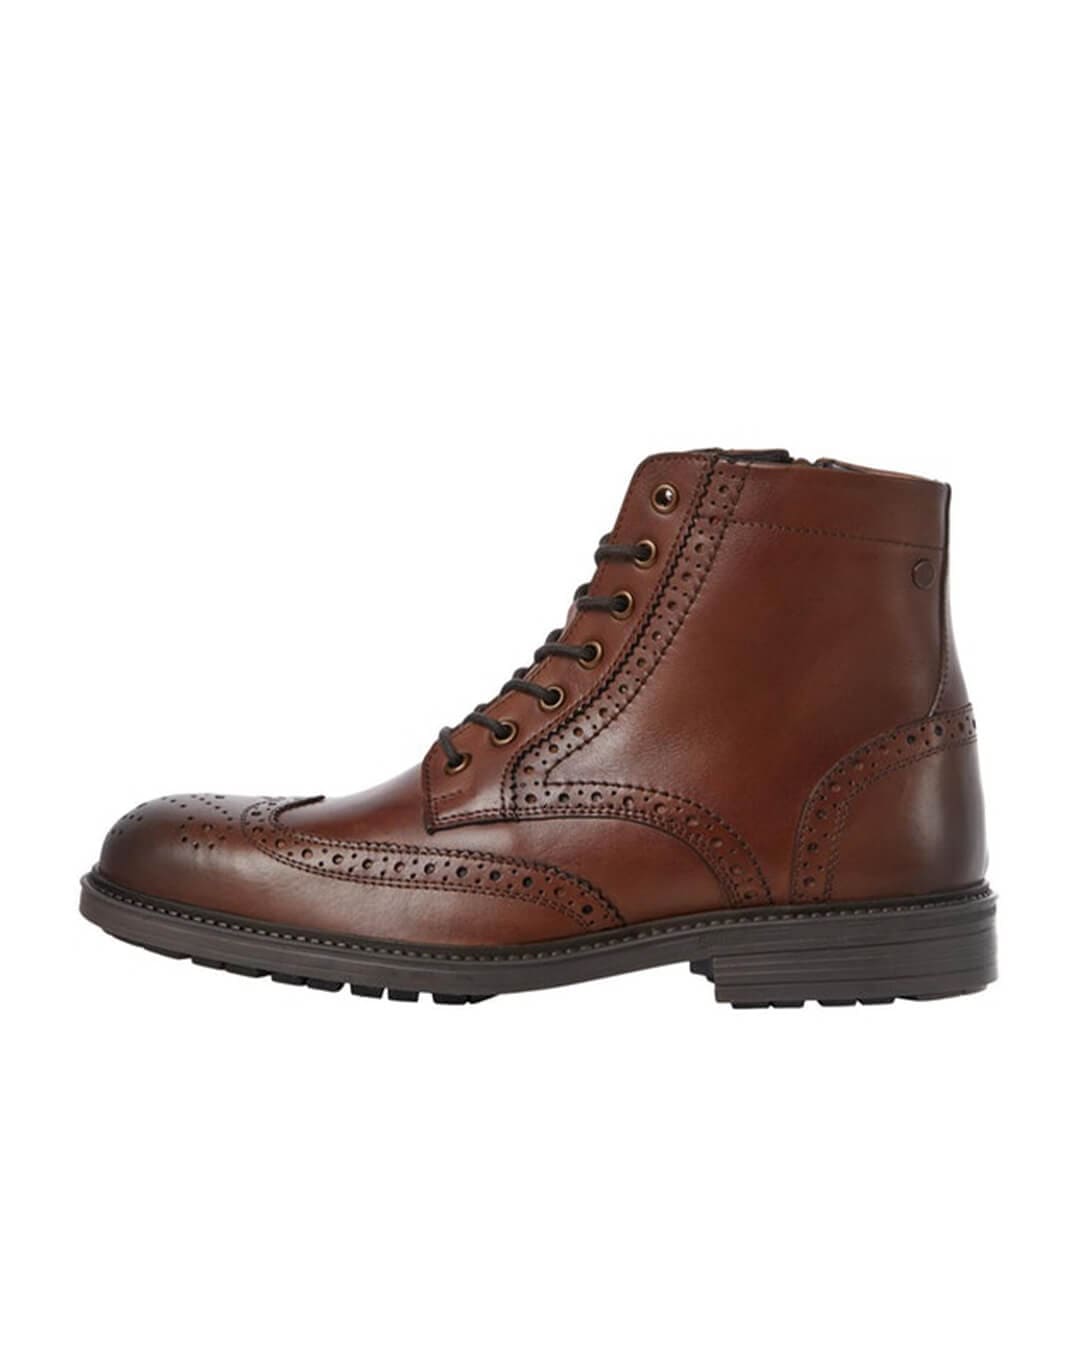 Jack & Jones Shoes Jack & Jones Whyde Brown Leather Brogue Boots